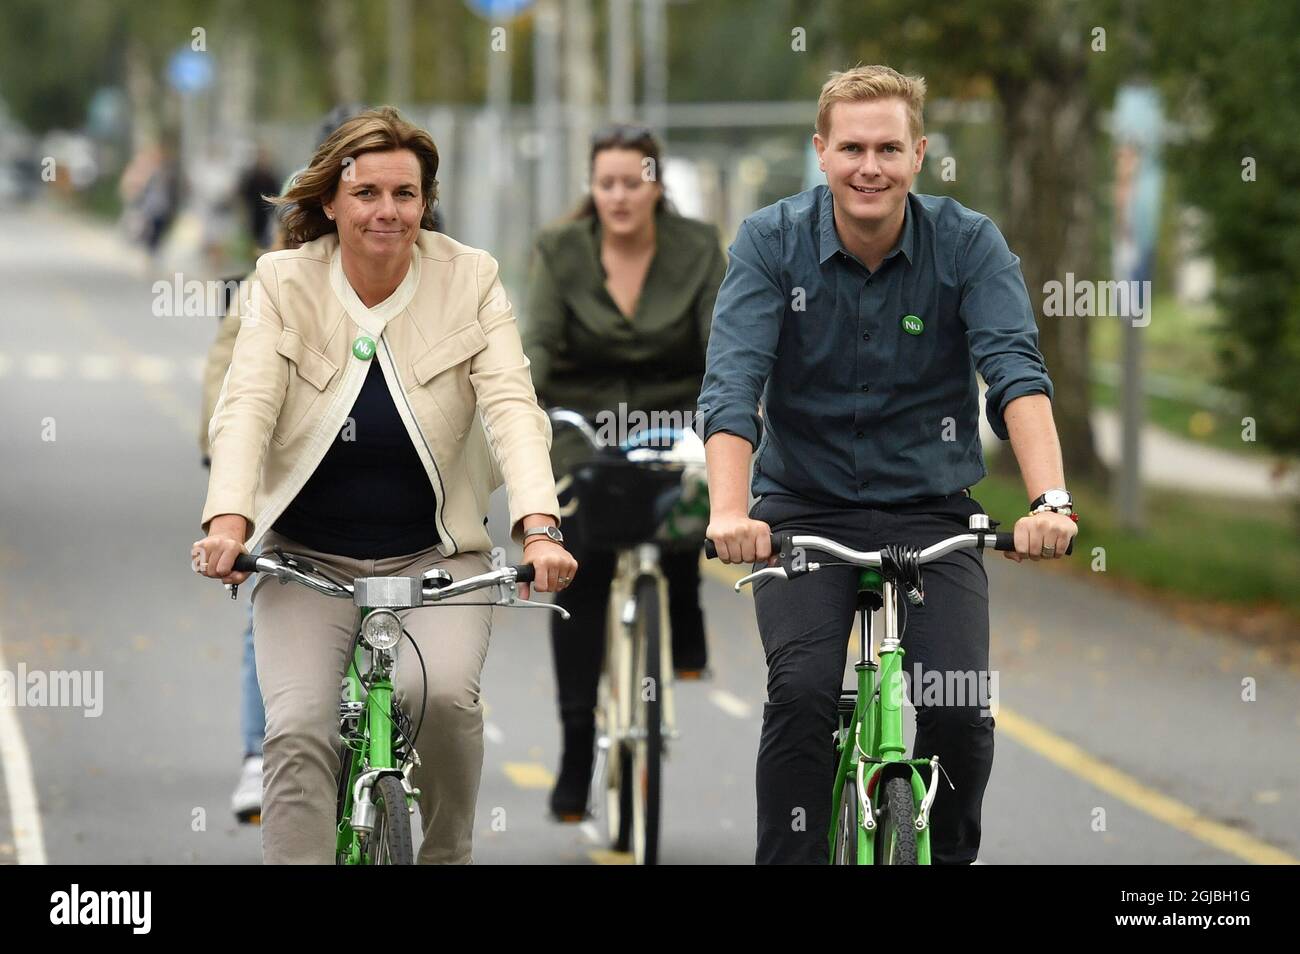 Isabella Lovin e Gustav Fridolin, portavoce del Partito Verde, in bici per partecipare alla marcia clima dei popoli a Stoccolma, Svezia, 8 settembre 2018. Foto: Erik Simander / TT / Kod 11720 Foto Stock